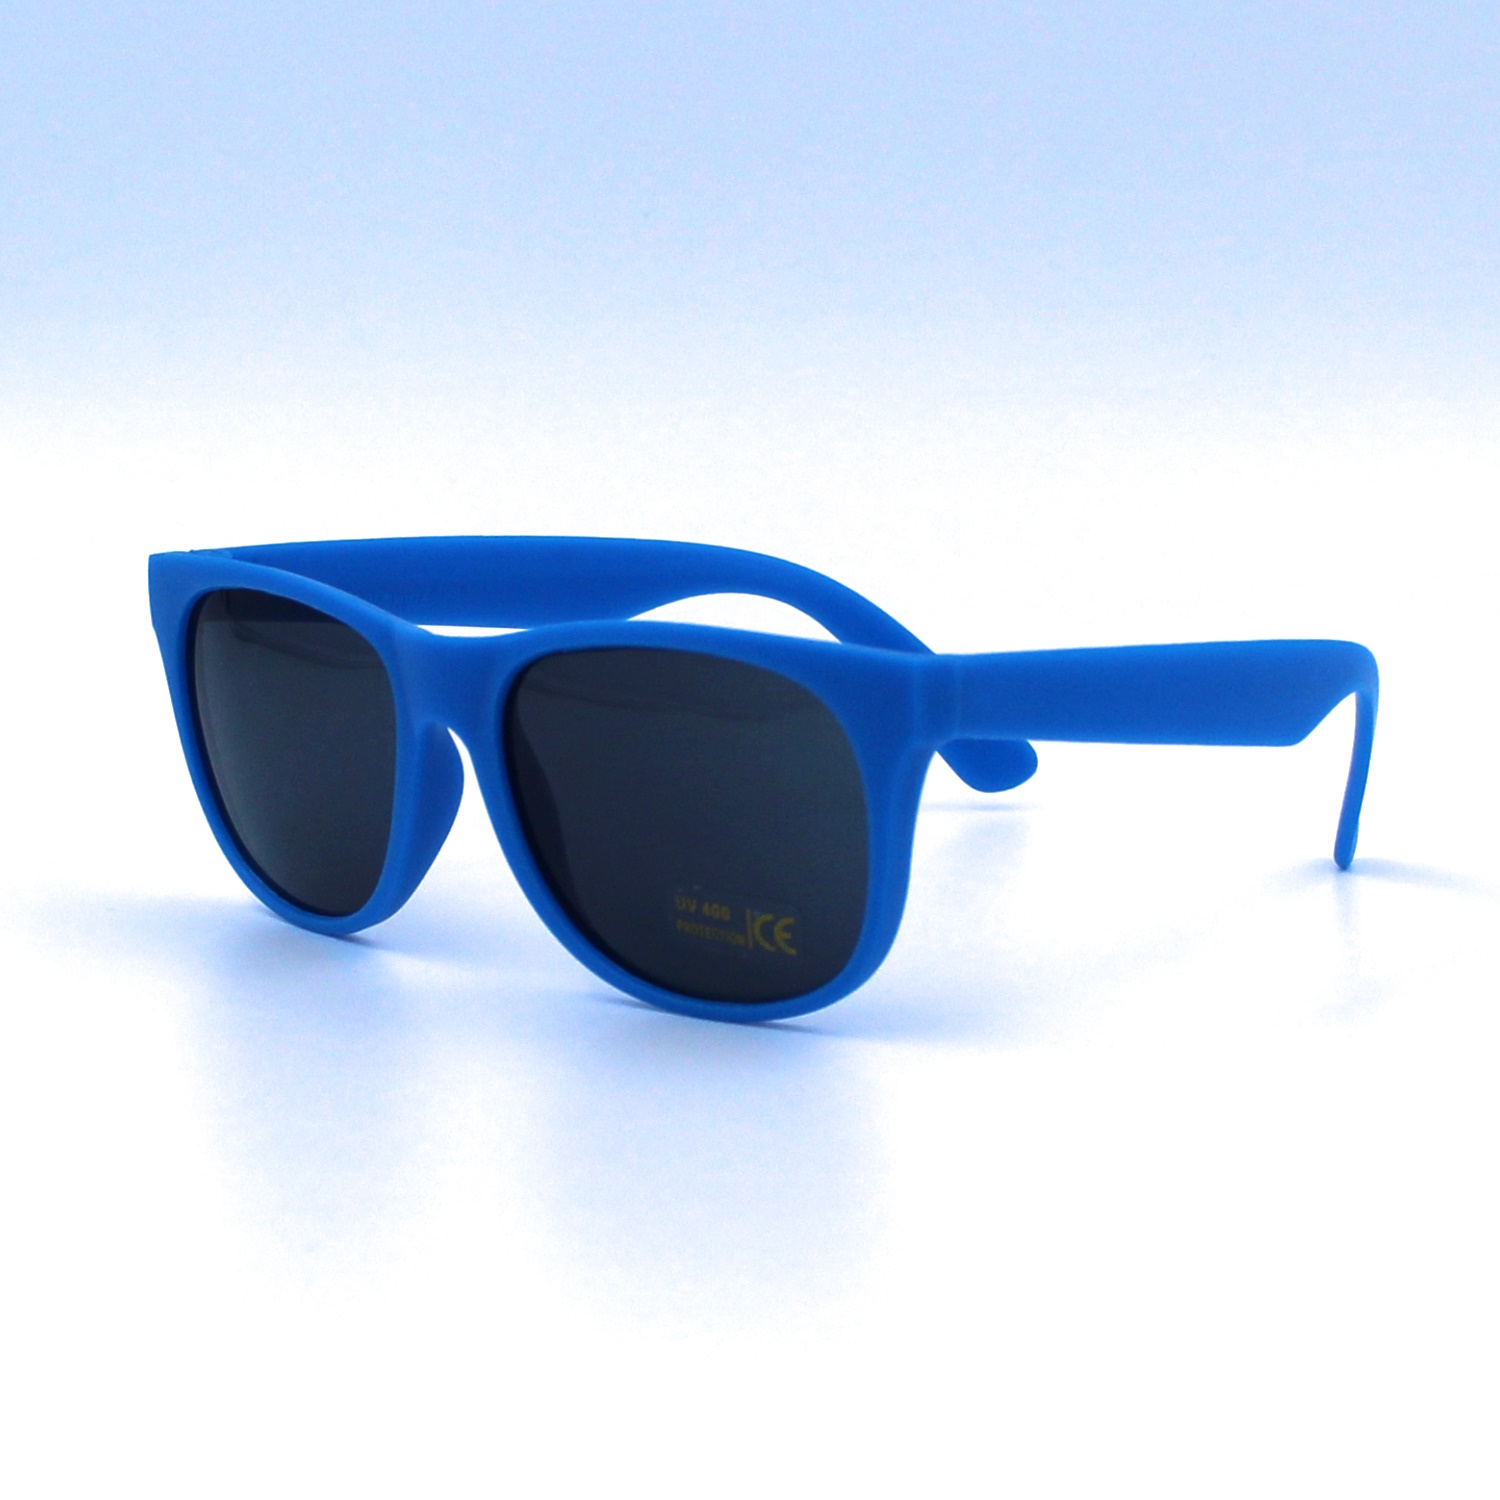 Blue Sunglasses For Sale - Wholesale | Color Powder For Sale